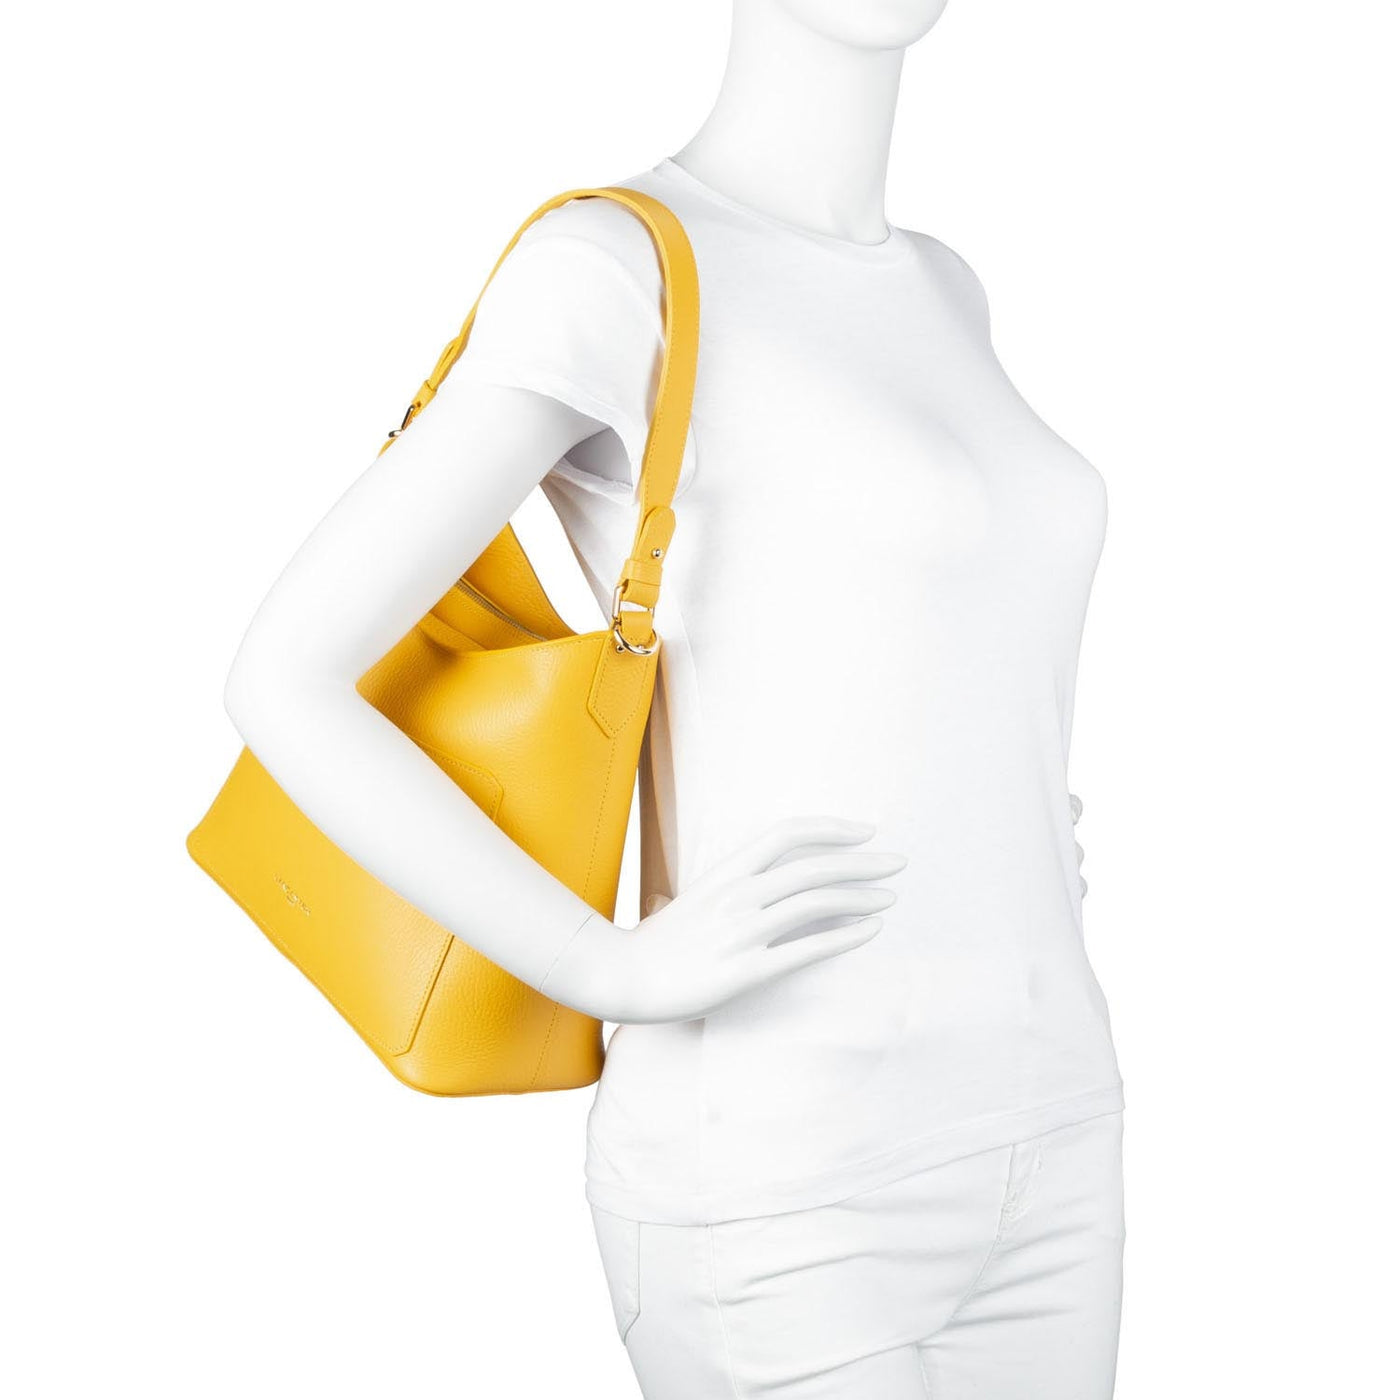 shoulder bag - foulonne double #couleur_rouge-in-poudre